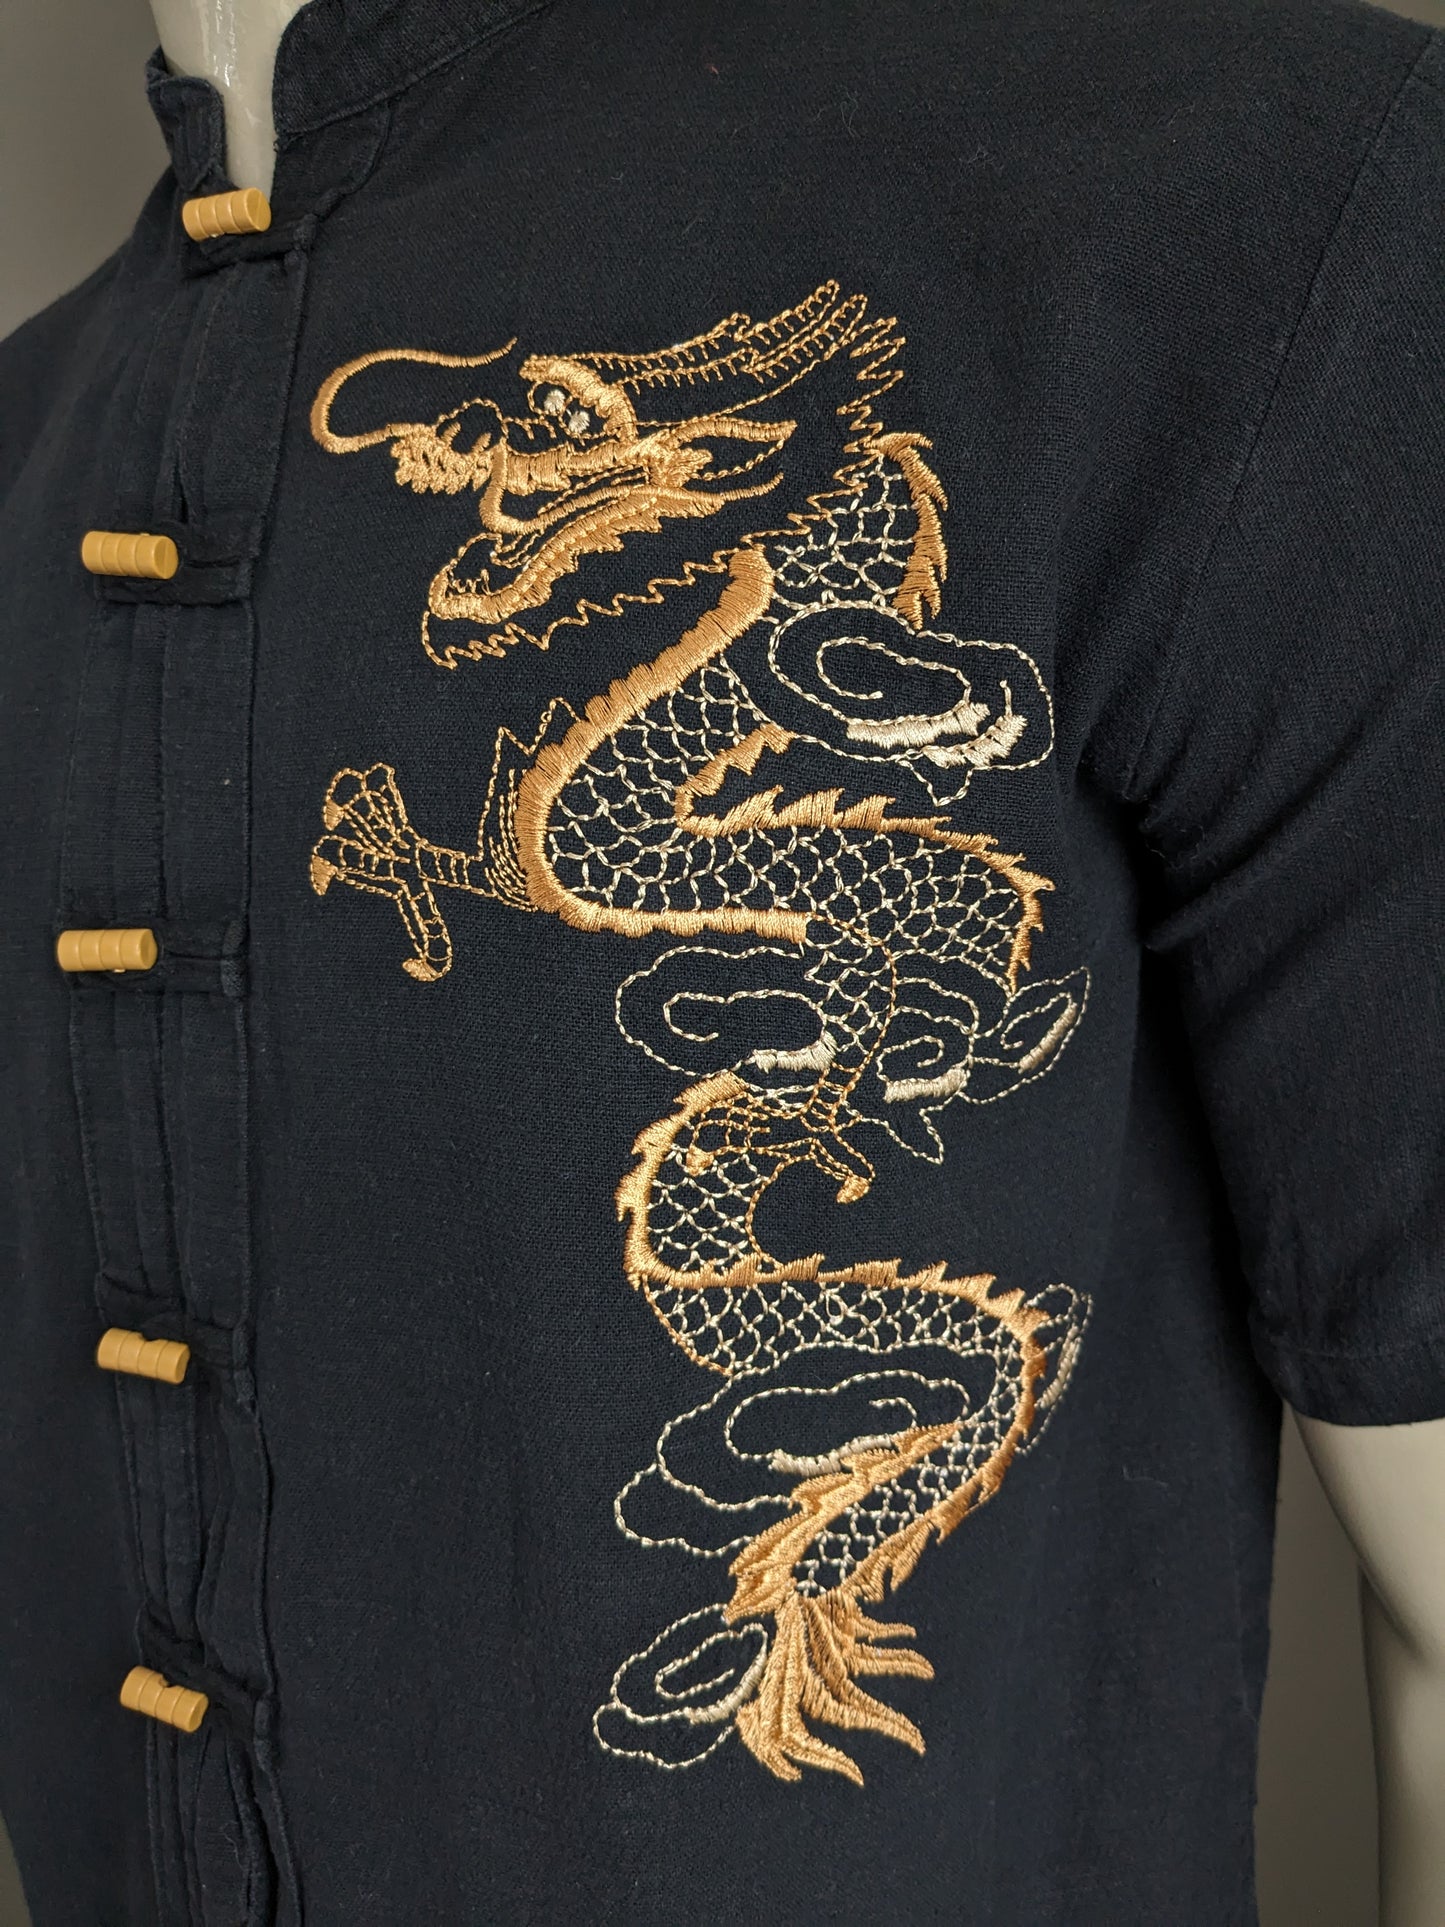 Sleeve corta con camicia Razia vintage con MAO / agricoltore / colletto rialzato. Nero con drago ricamato. Taglia L.